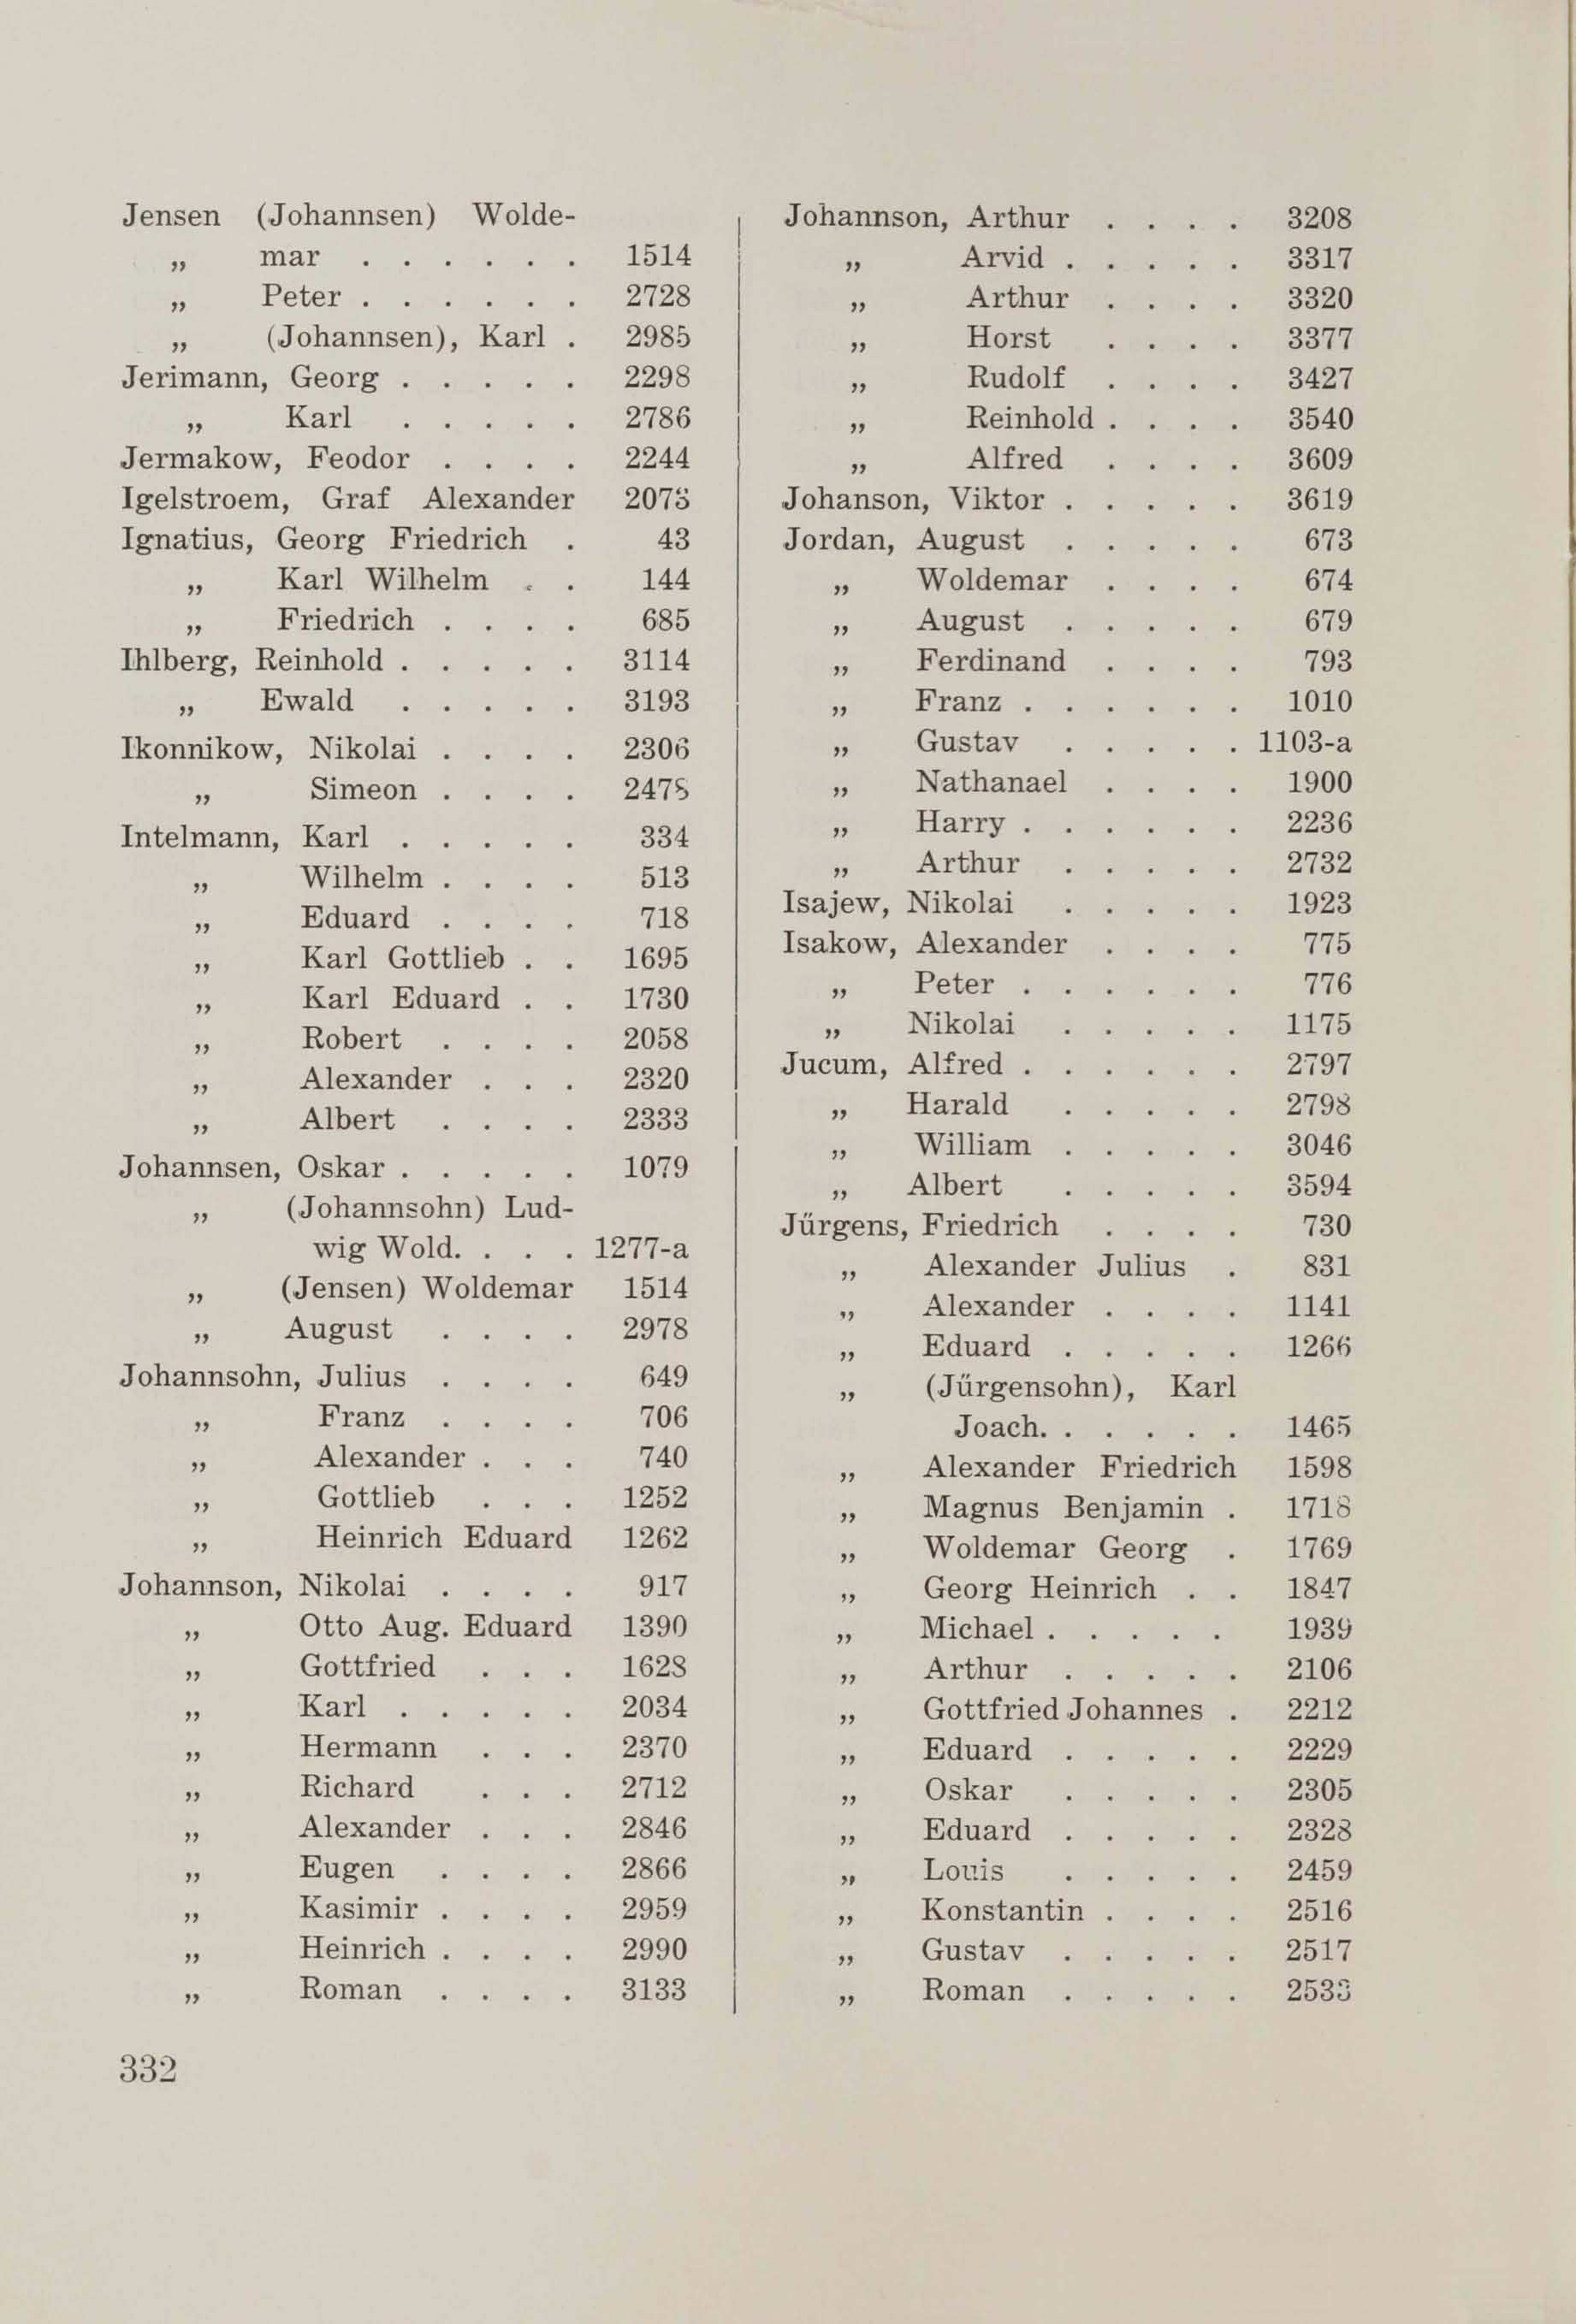 Schüler-Verzeichnis des Revalschen Gouvernements-Gymnasiums 1805–1890 (1931) | 342. (332) Main body of text